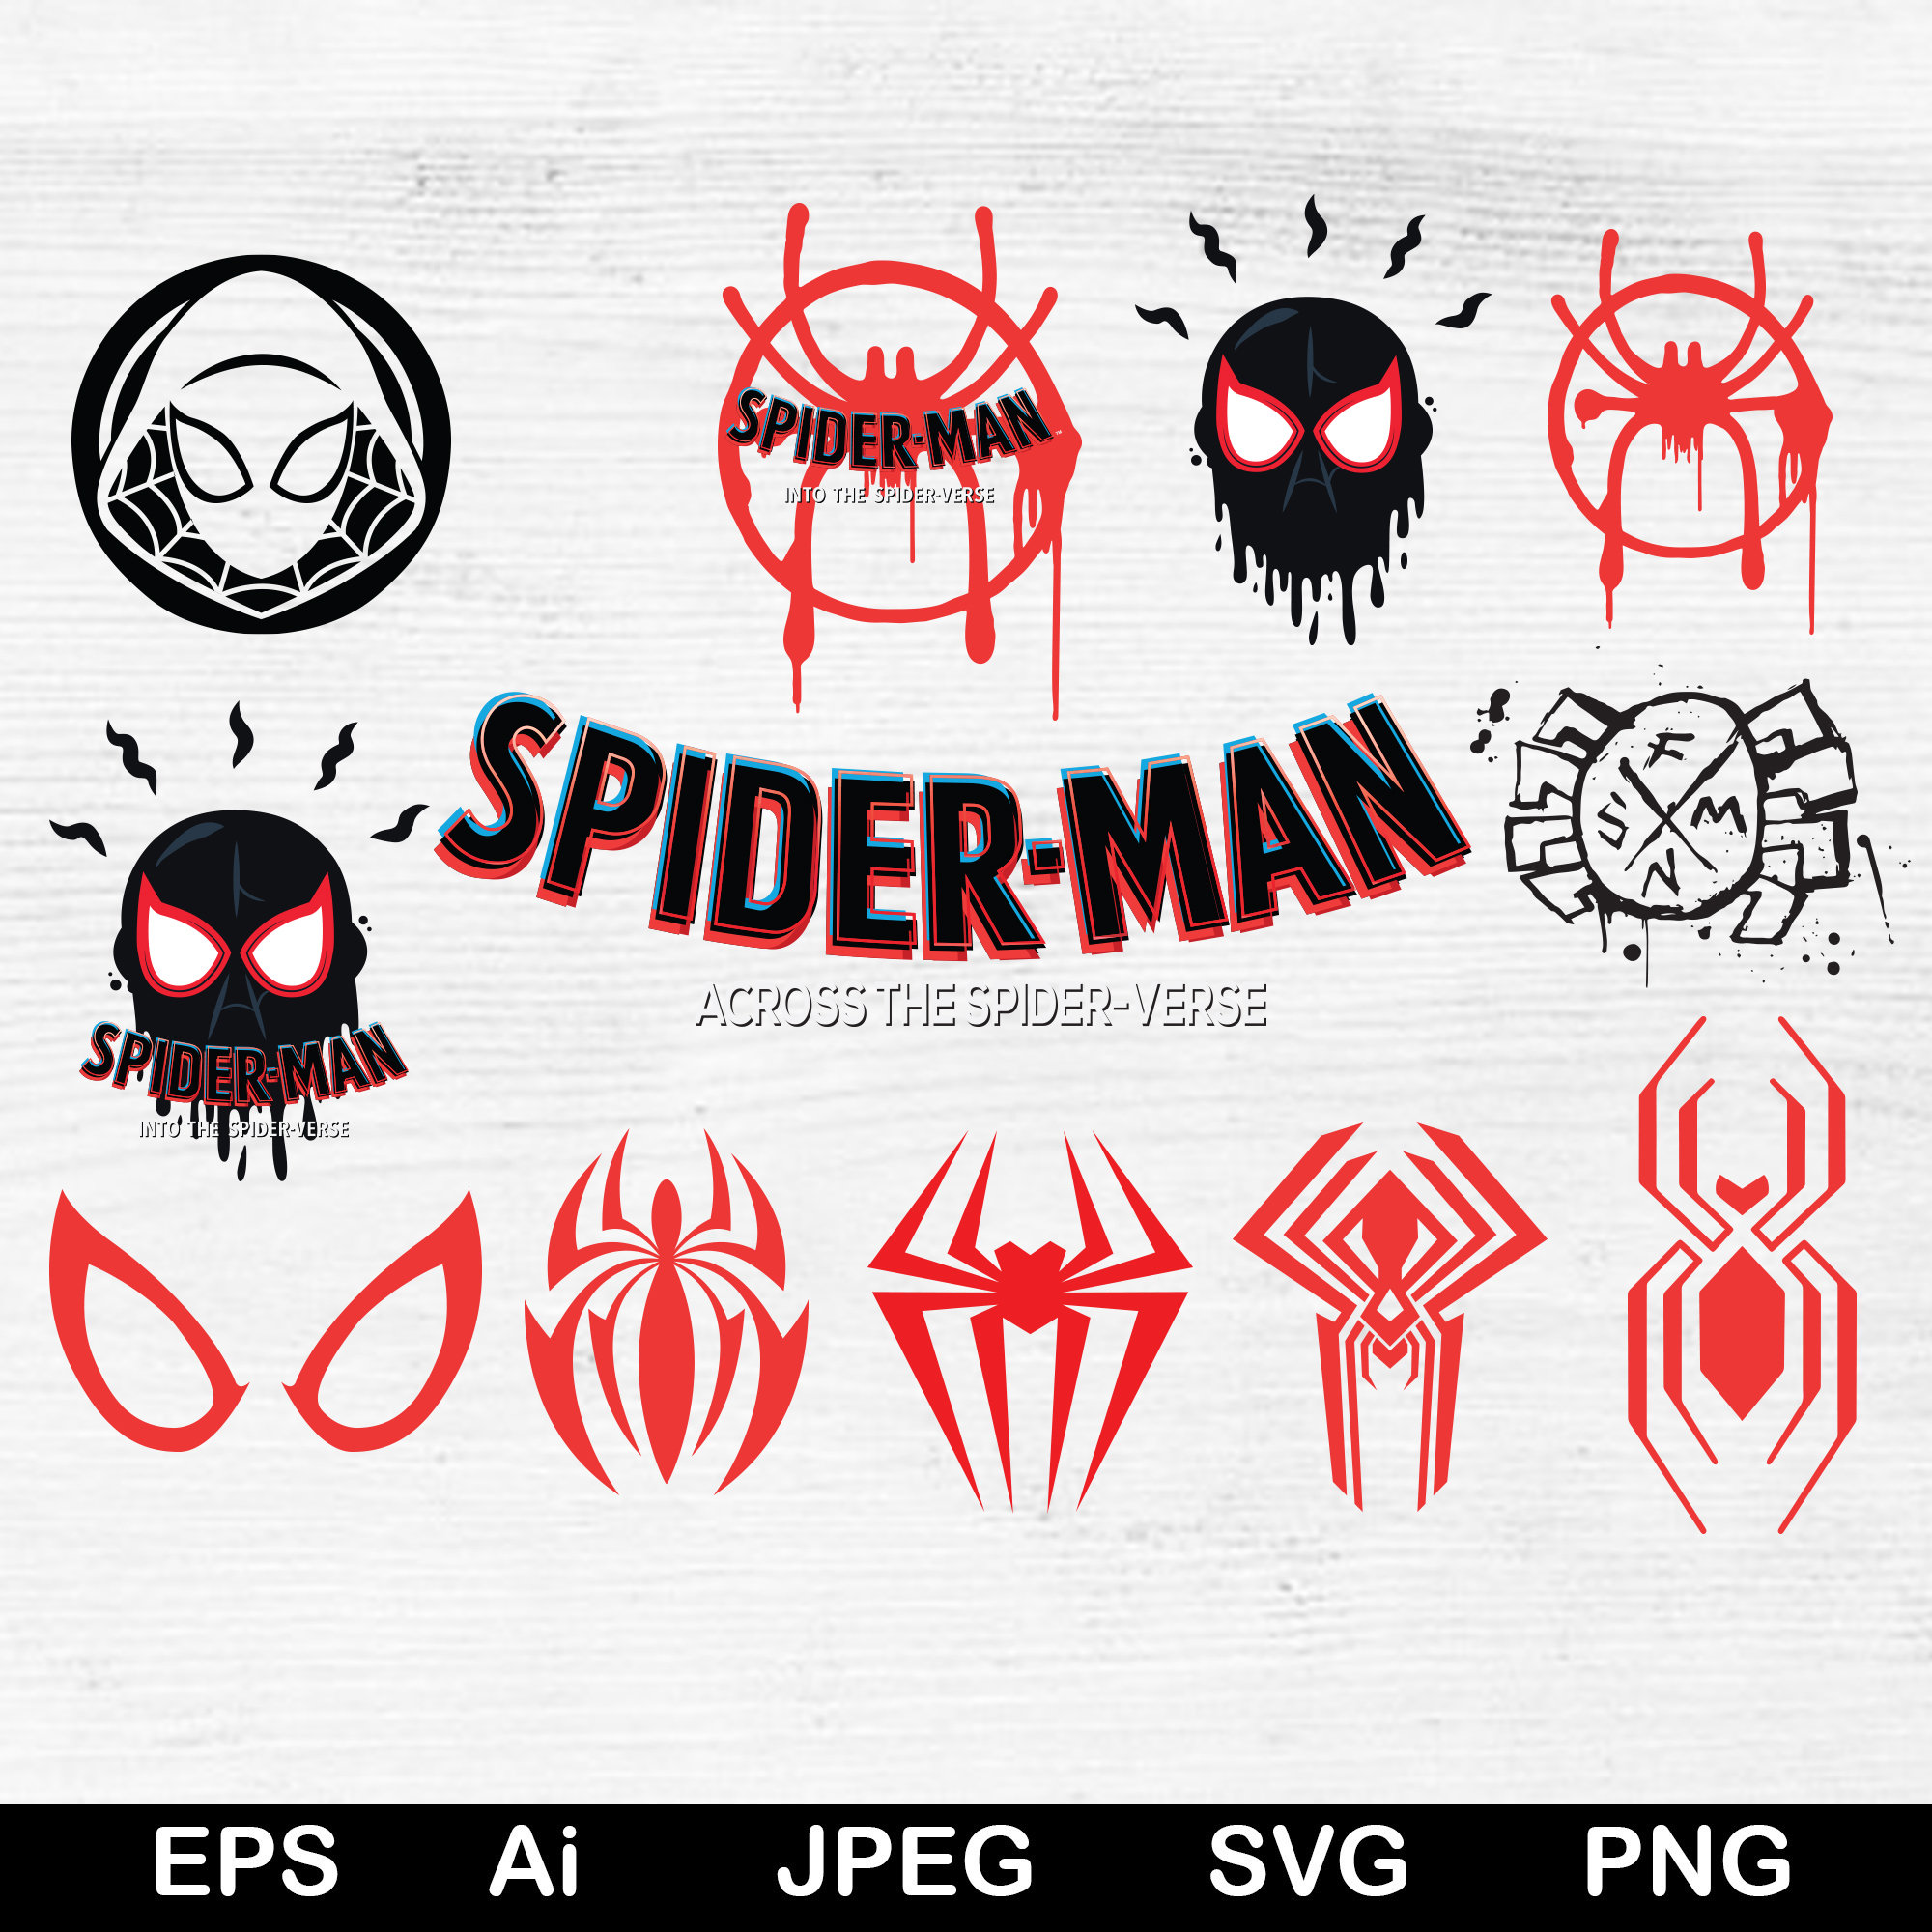 Spider-Man: Across the Spider-Verse, Spider-Man, logo, black